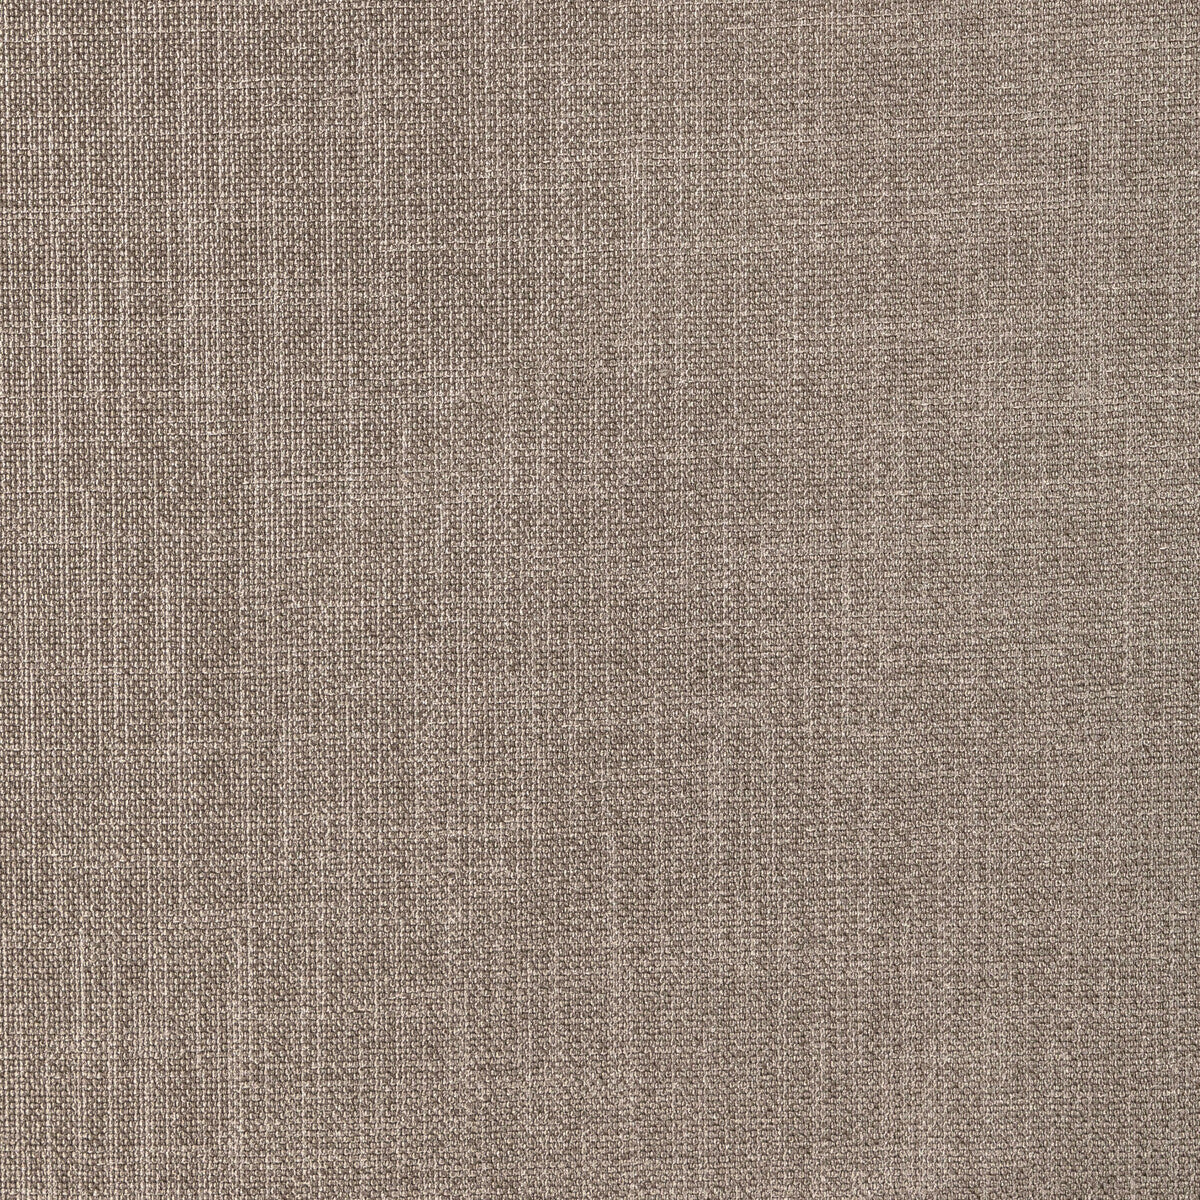 Kravet Basics fabric in 33120-1616 color - pattern 33120.1616.0 - by Kravet Basics